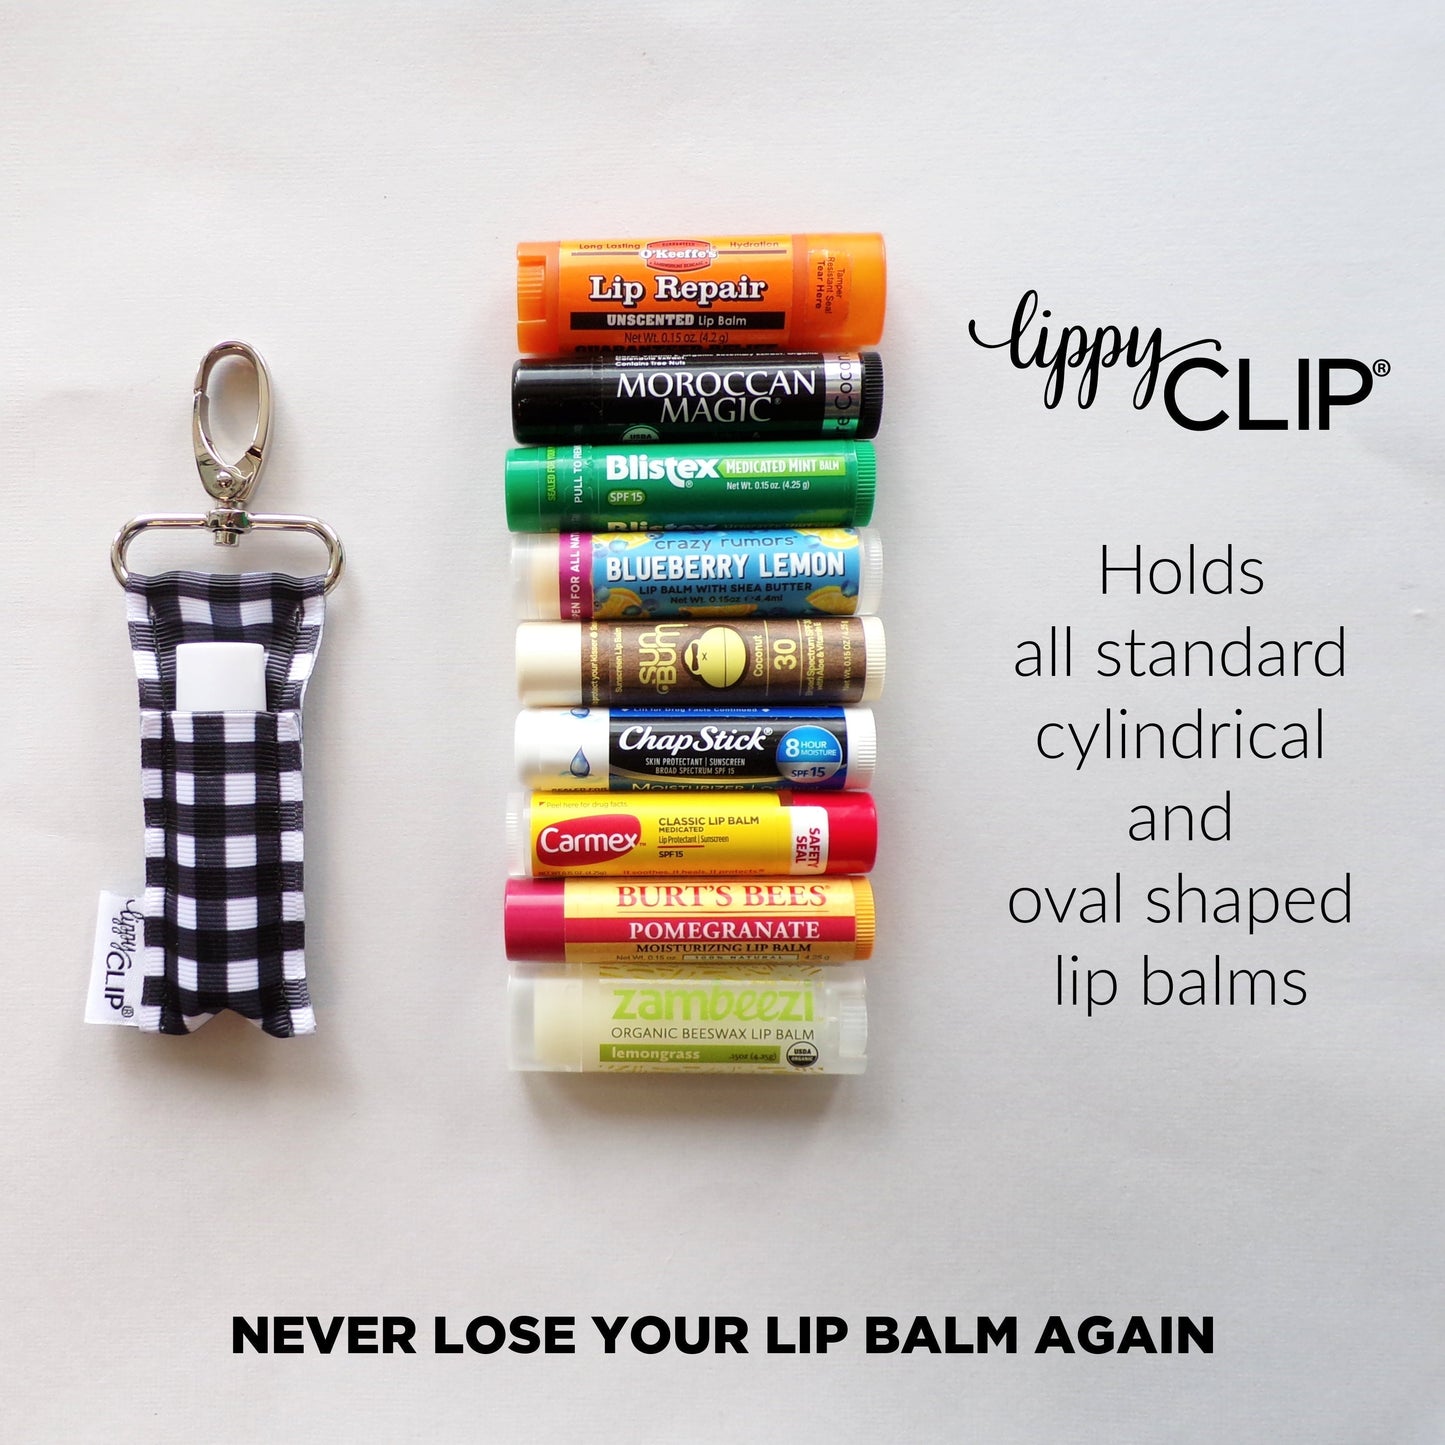 Tropical Garden LippyClip® Lip Balm Holder